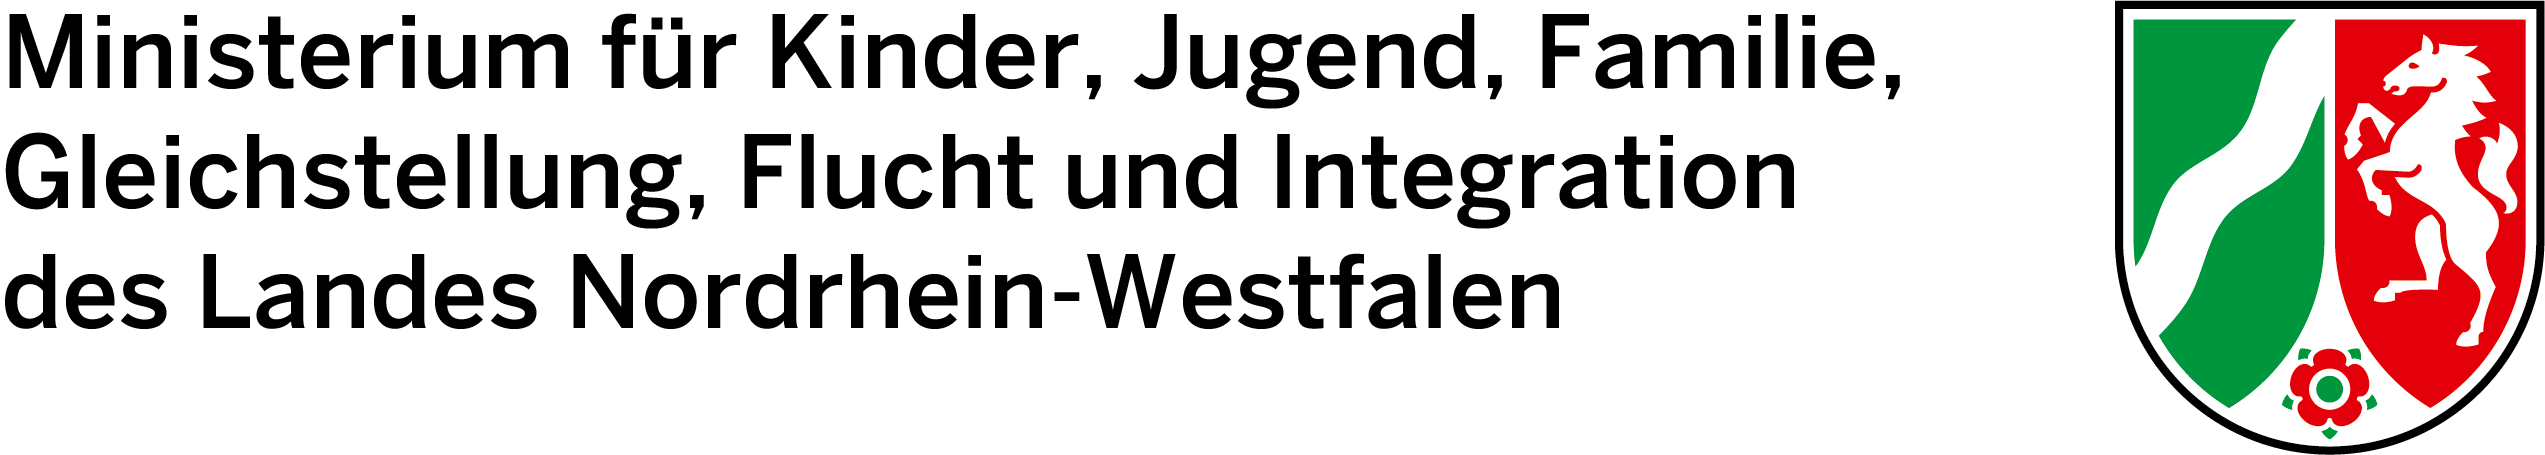 Logo des Ministeriums für Kinder, Jugend, Familie, Gleichstellung, Flucht und Integration des Landes NRW